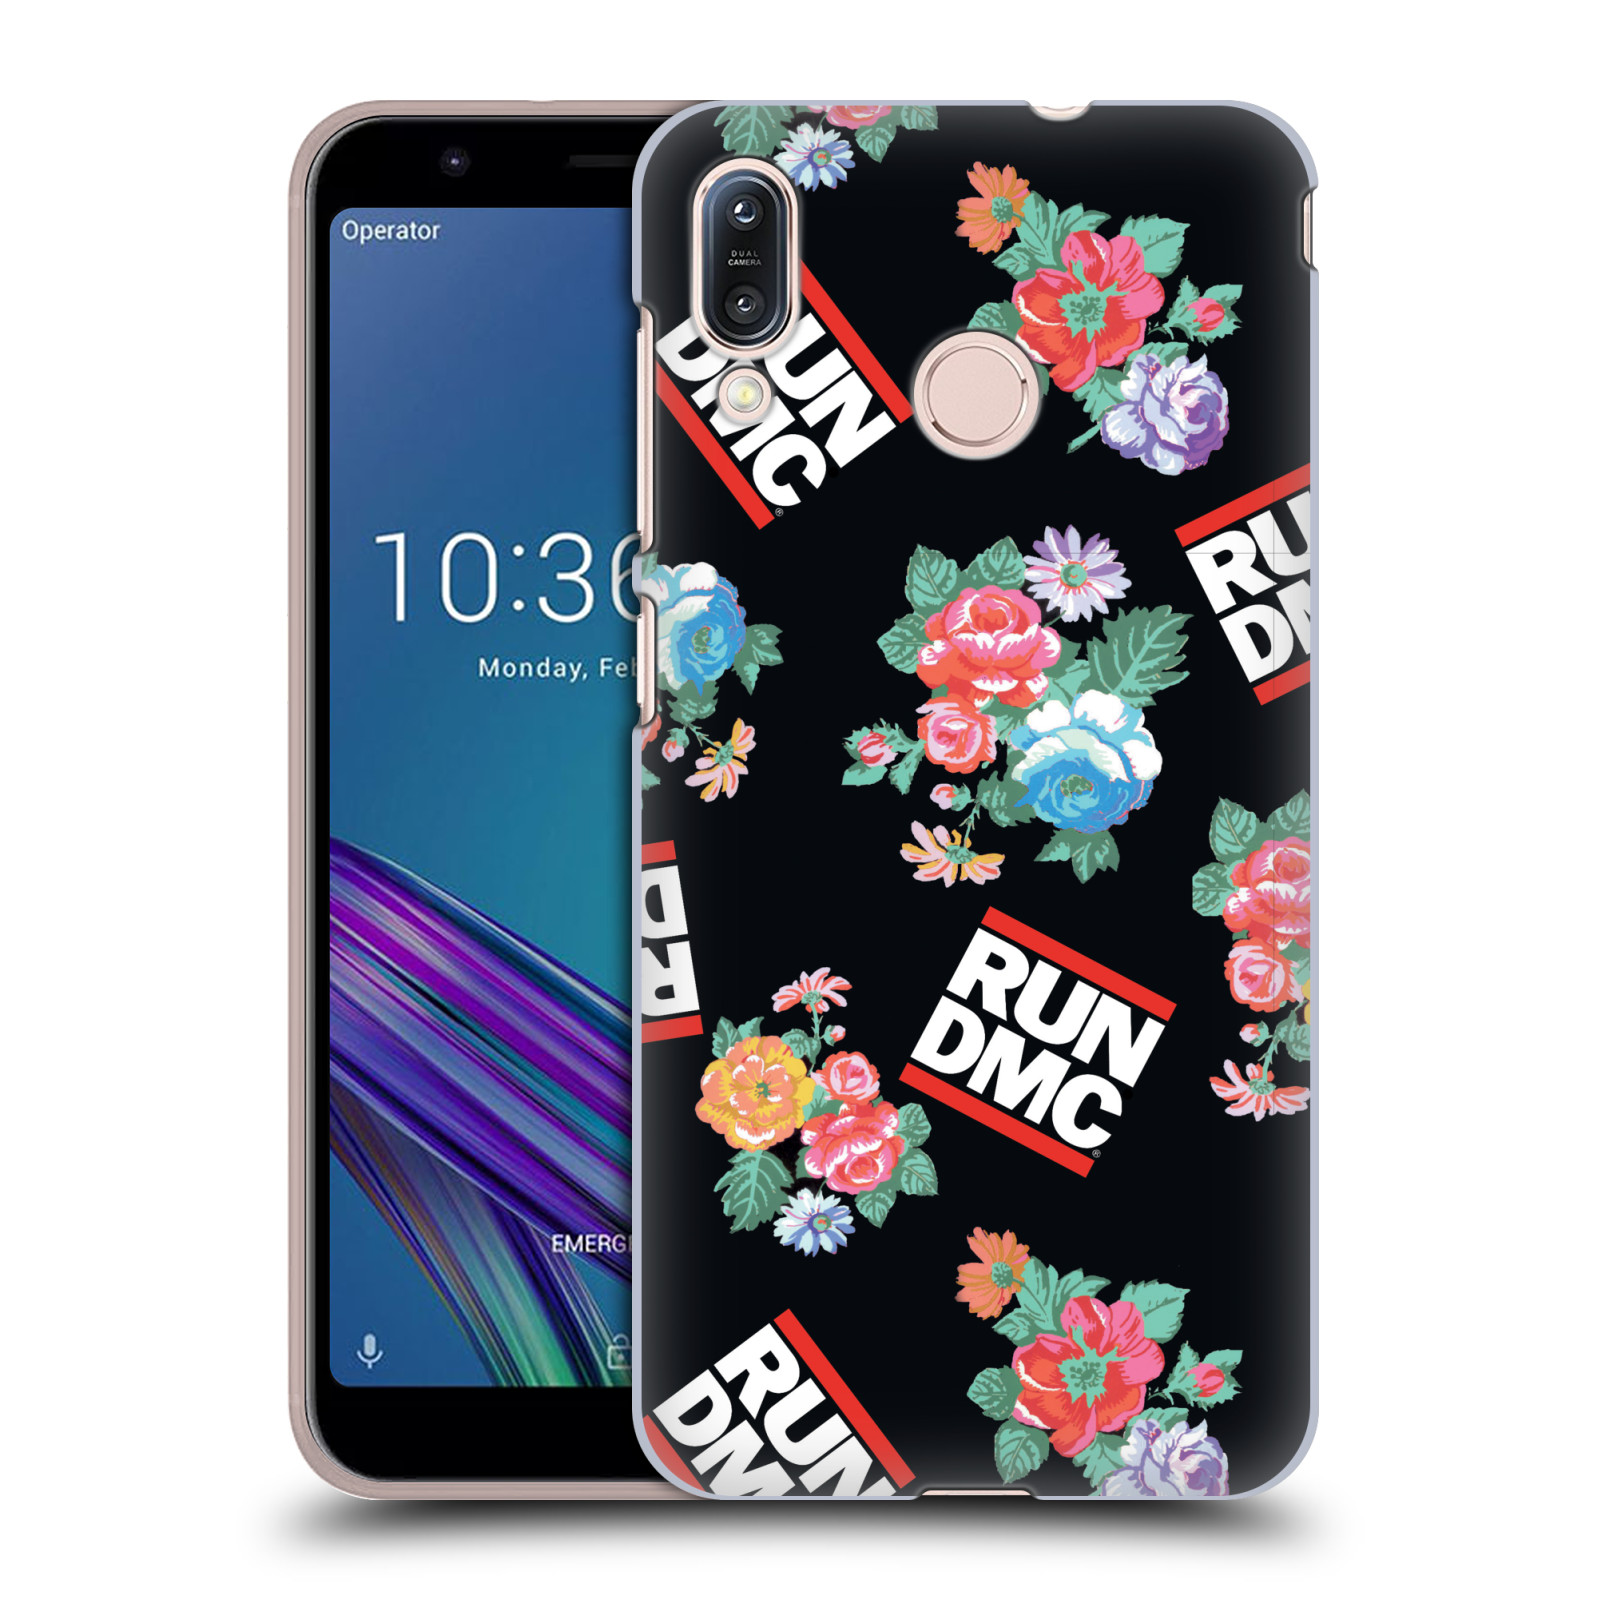 Pouzdro na mobil Asus Zenfone Max M1 (ZB555KL) - HEAD CASE - rapová kapela Run DMC květiny černé pozadí